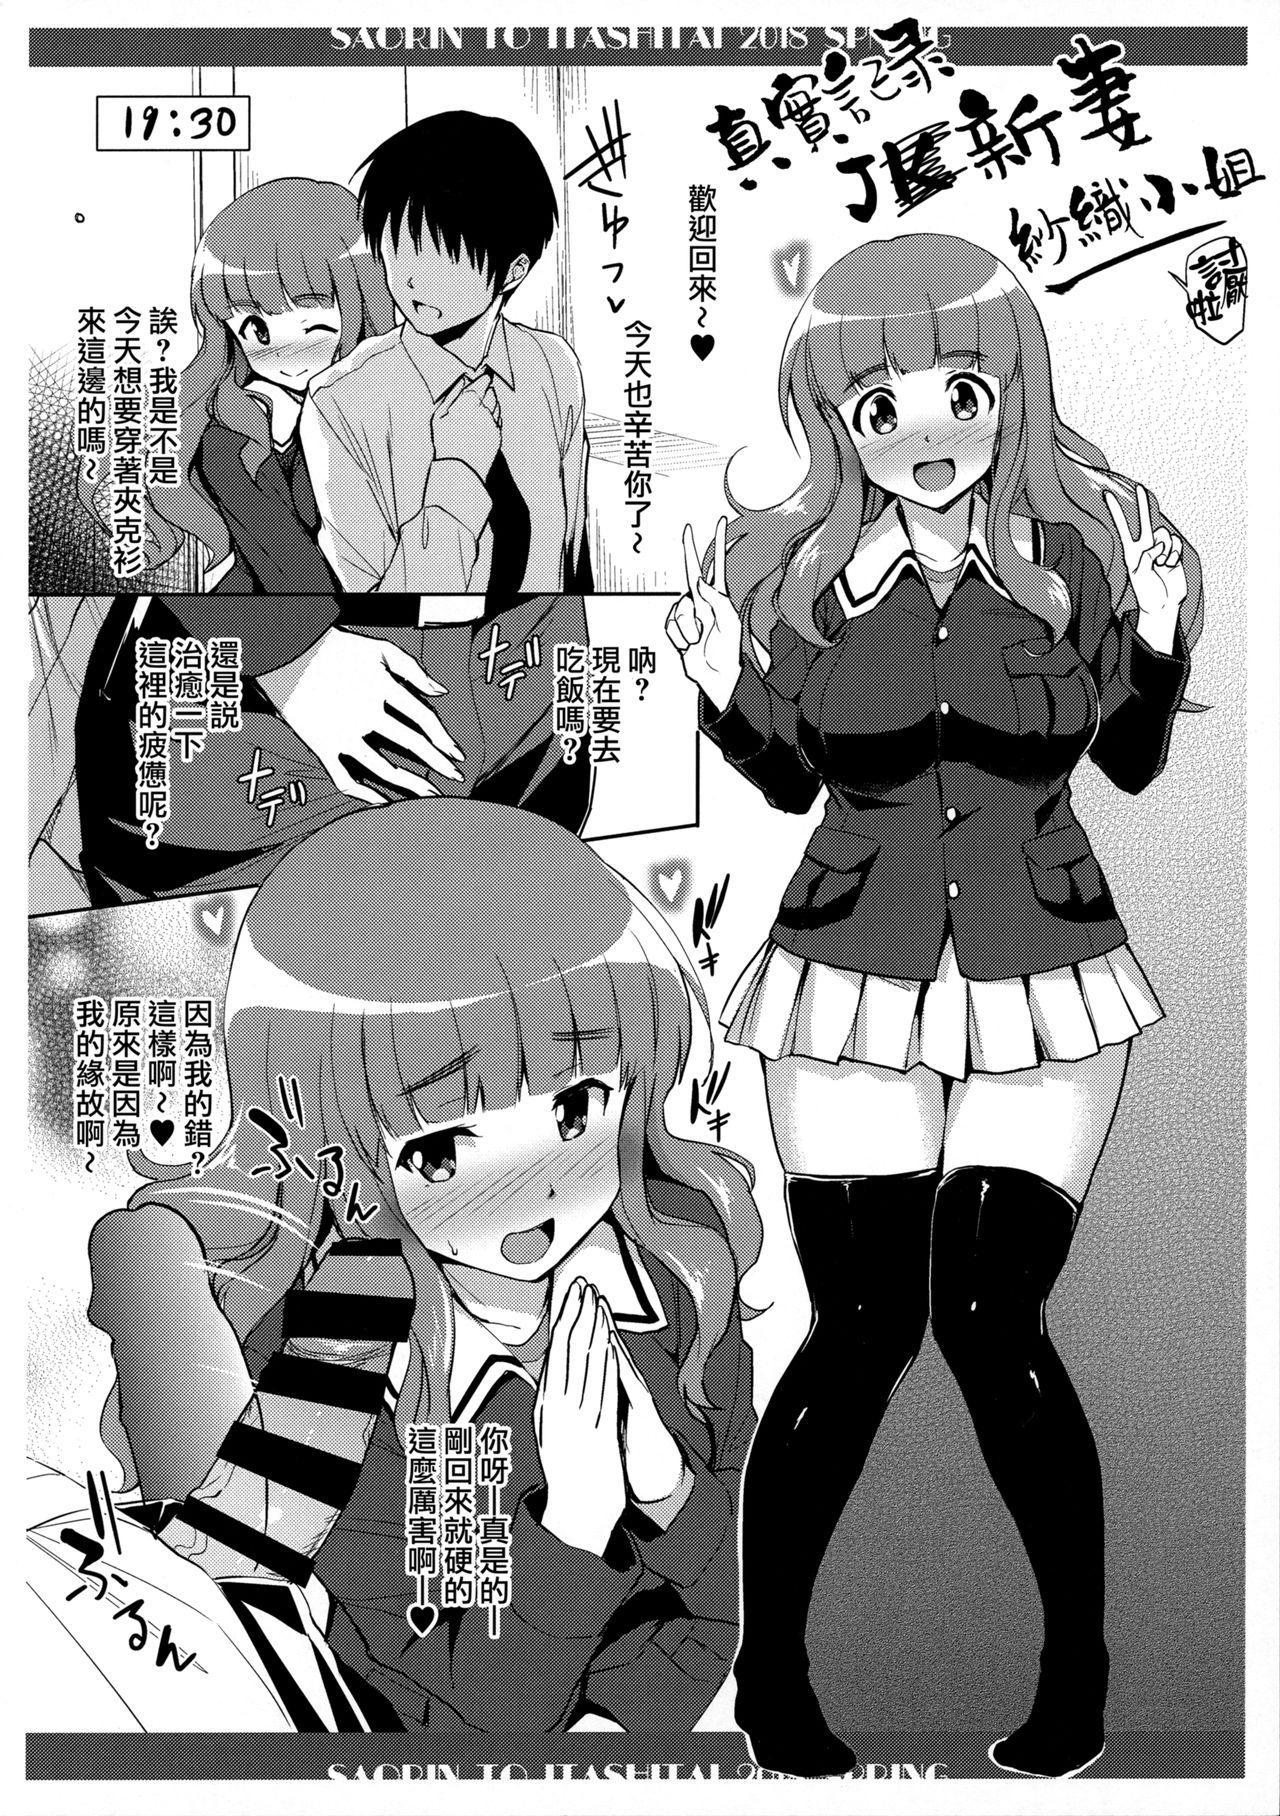 Busty Saorin to Itashitai. 2018 Haru - Girls und panzer Free Teenage Porn - Page 3